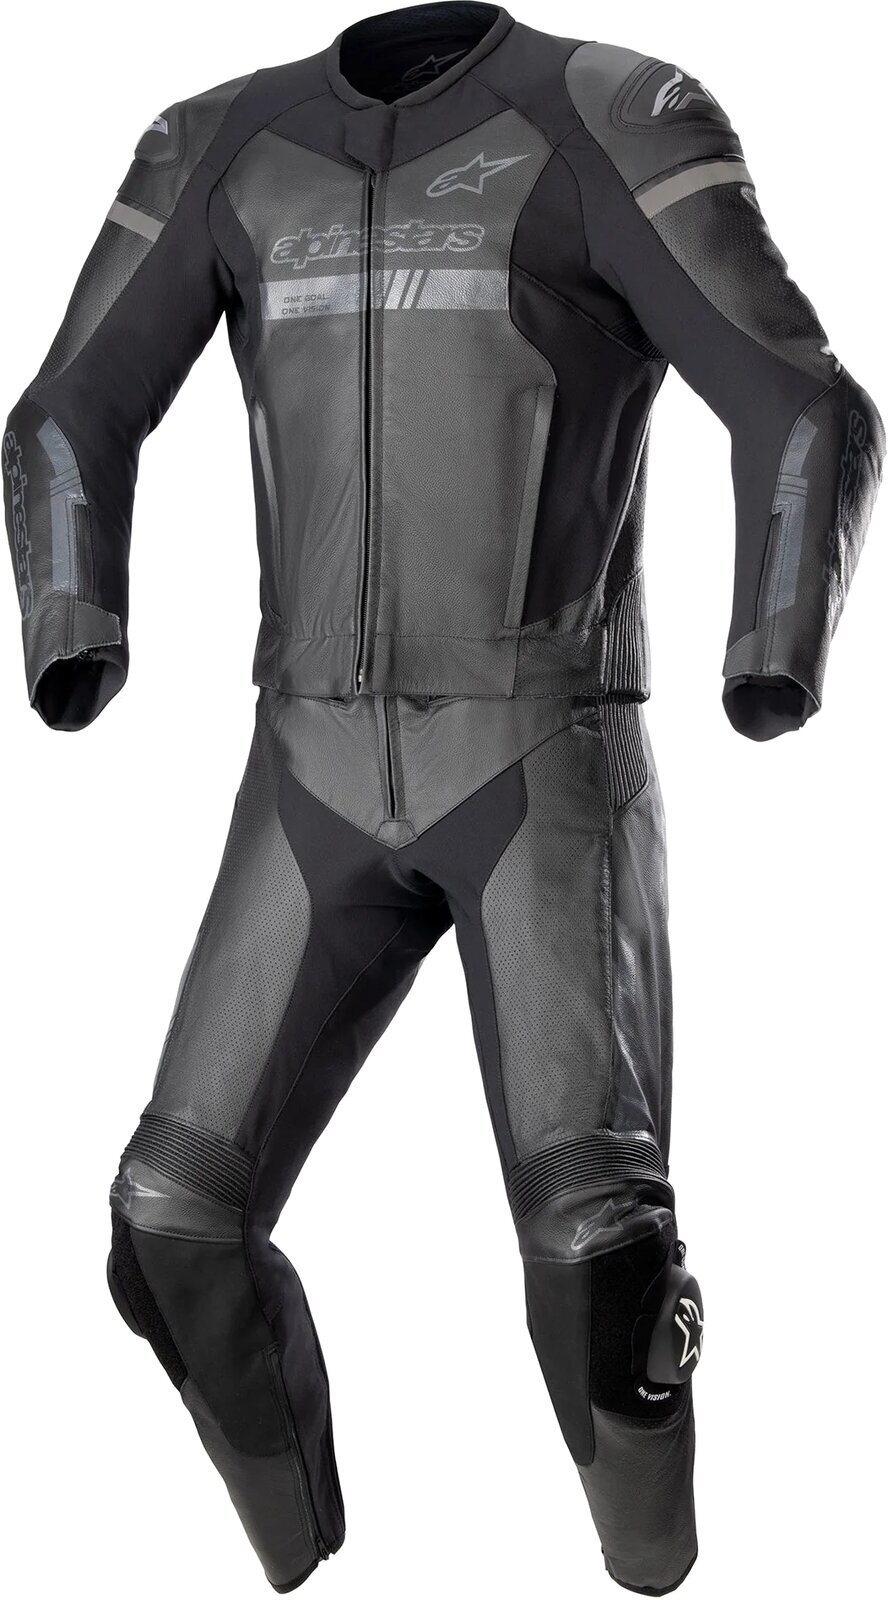 Zweiteiler Motorradkombis Alpinestars GP Force Chaser Leather Suit 2 Pc Black/Black 54 Zweiteiler Motorradkombis